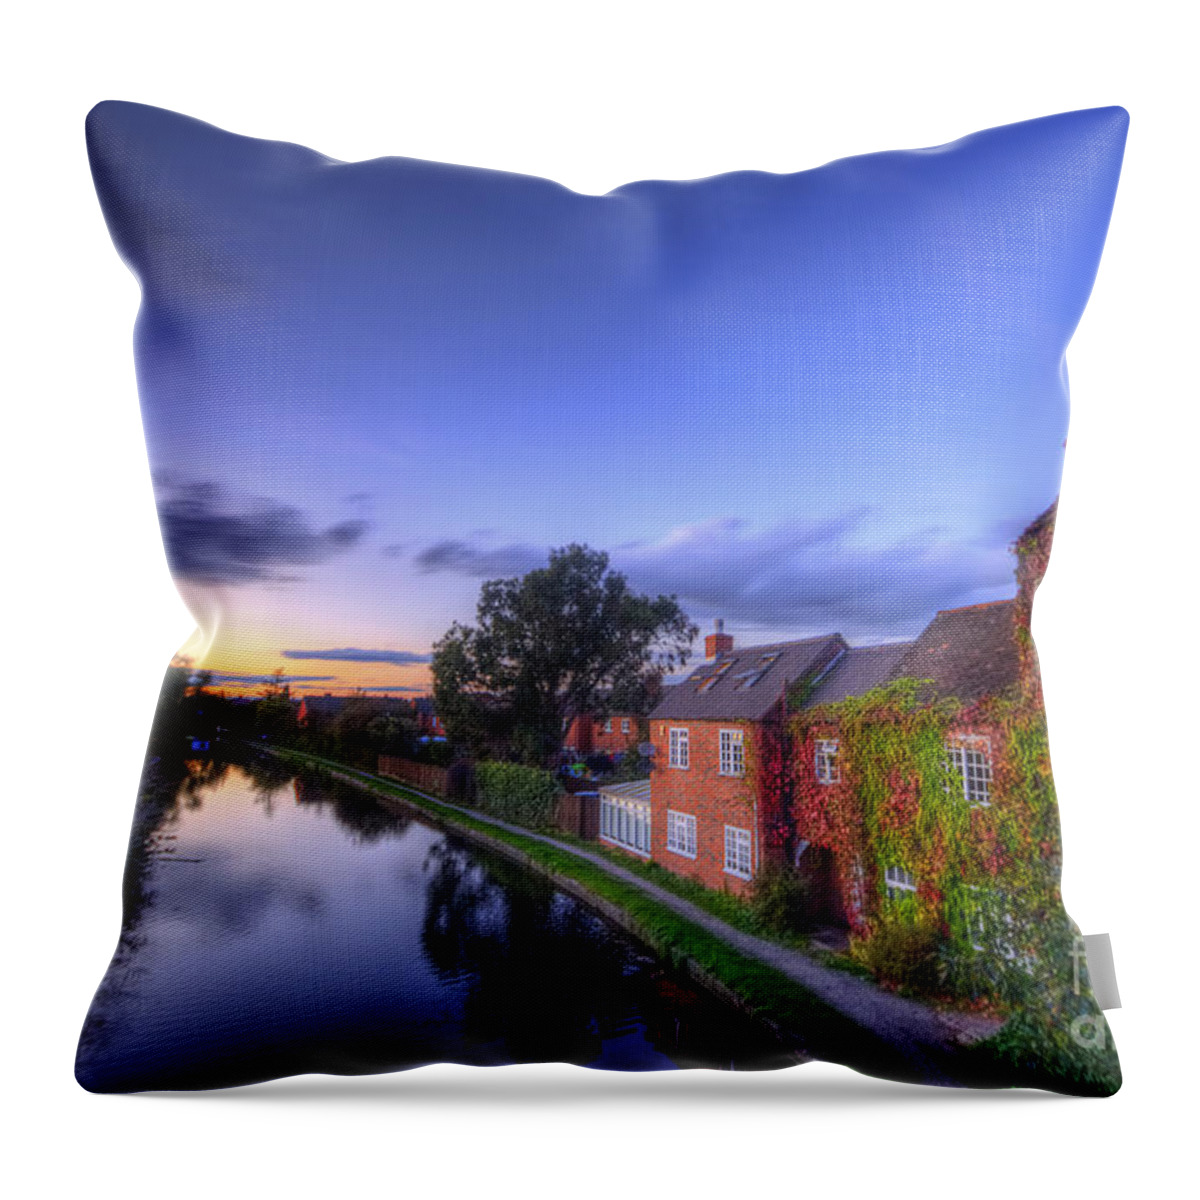  Yhun Suarez Throw Pillow featuring the photograph Canal Sunset by Yhun Suarez